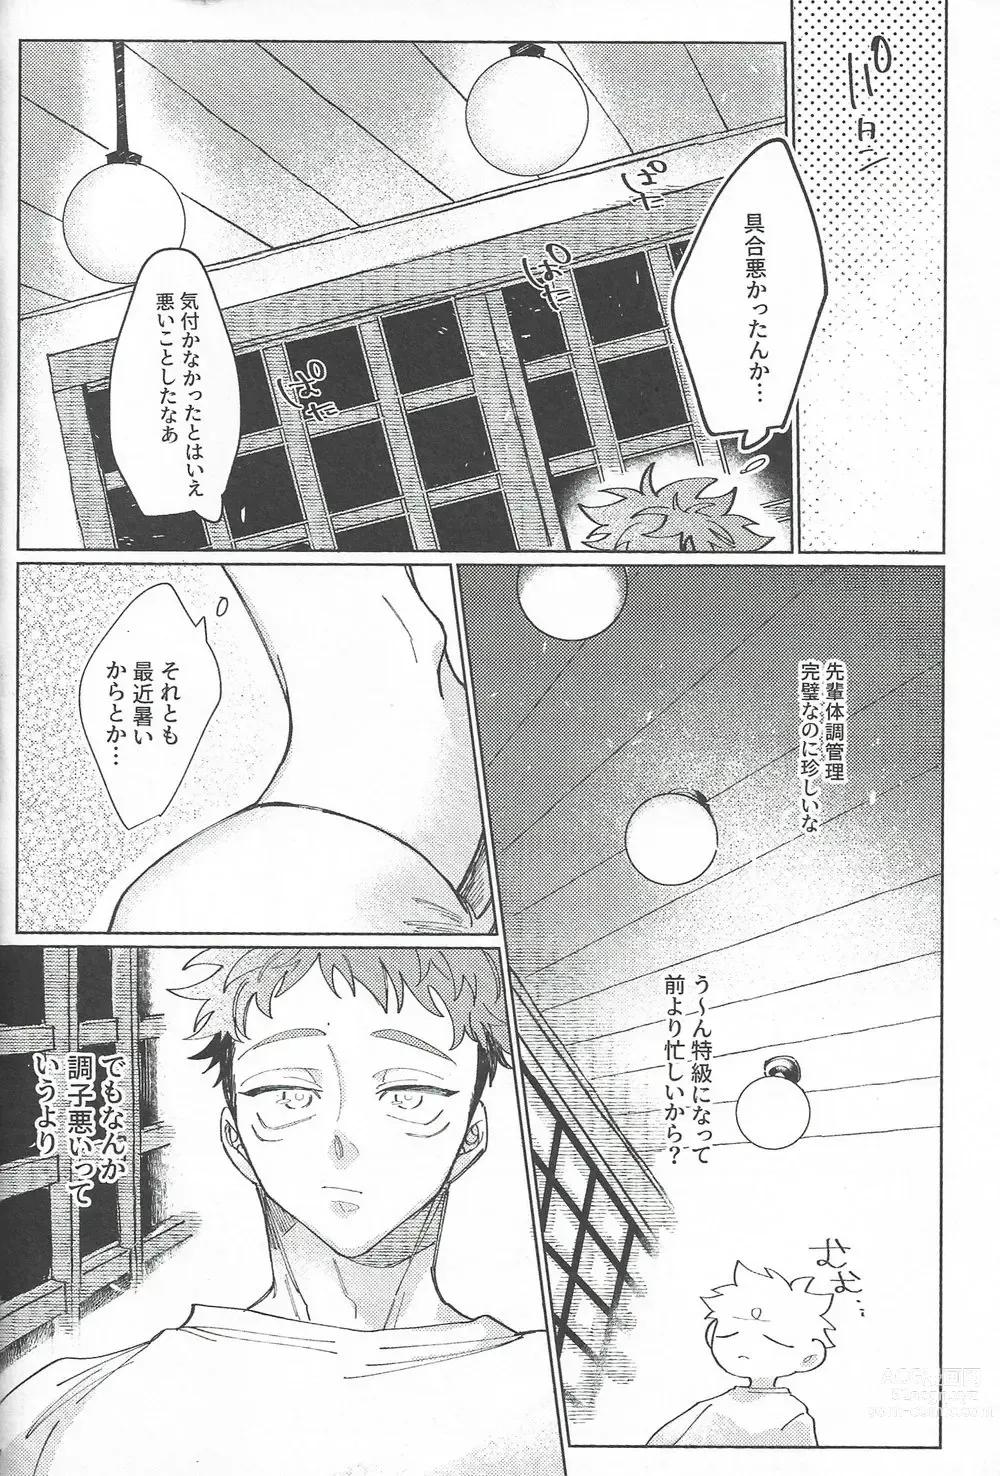 Page 51 of doujinshi Rakuen no Niwa